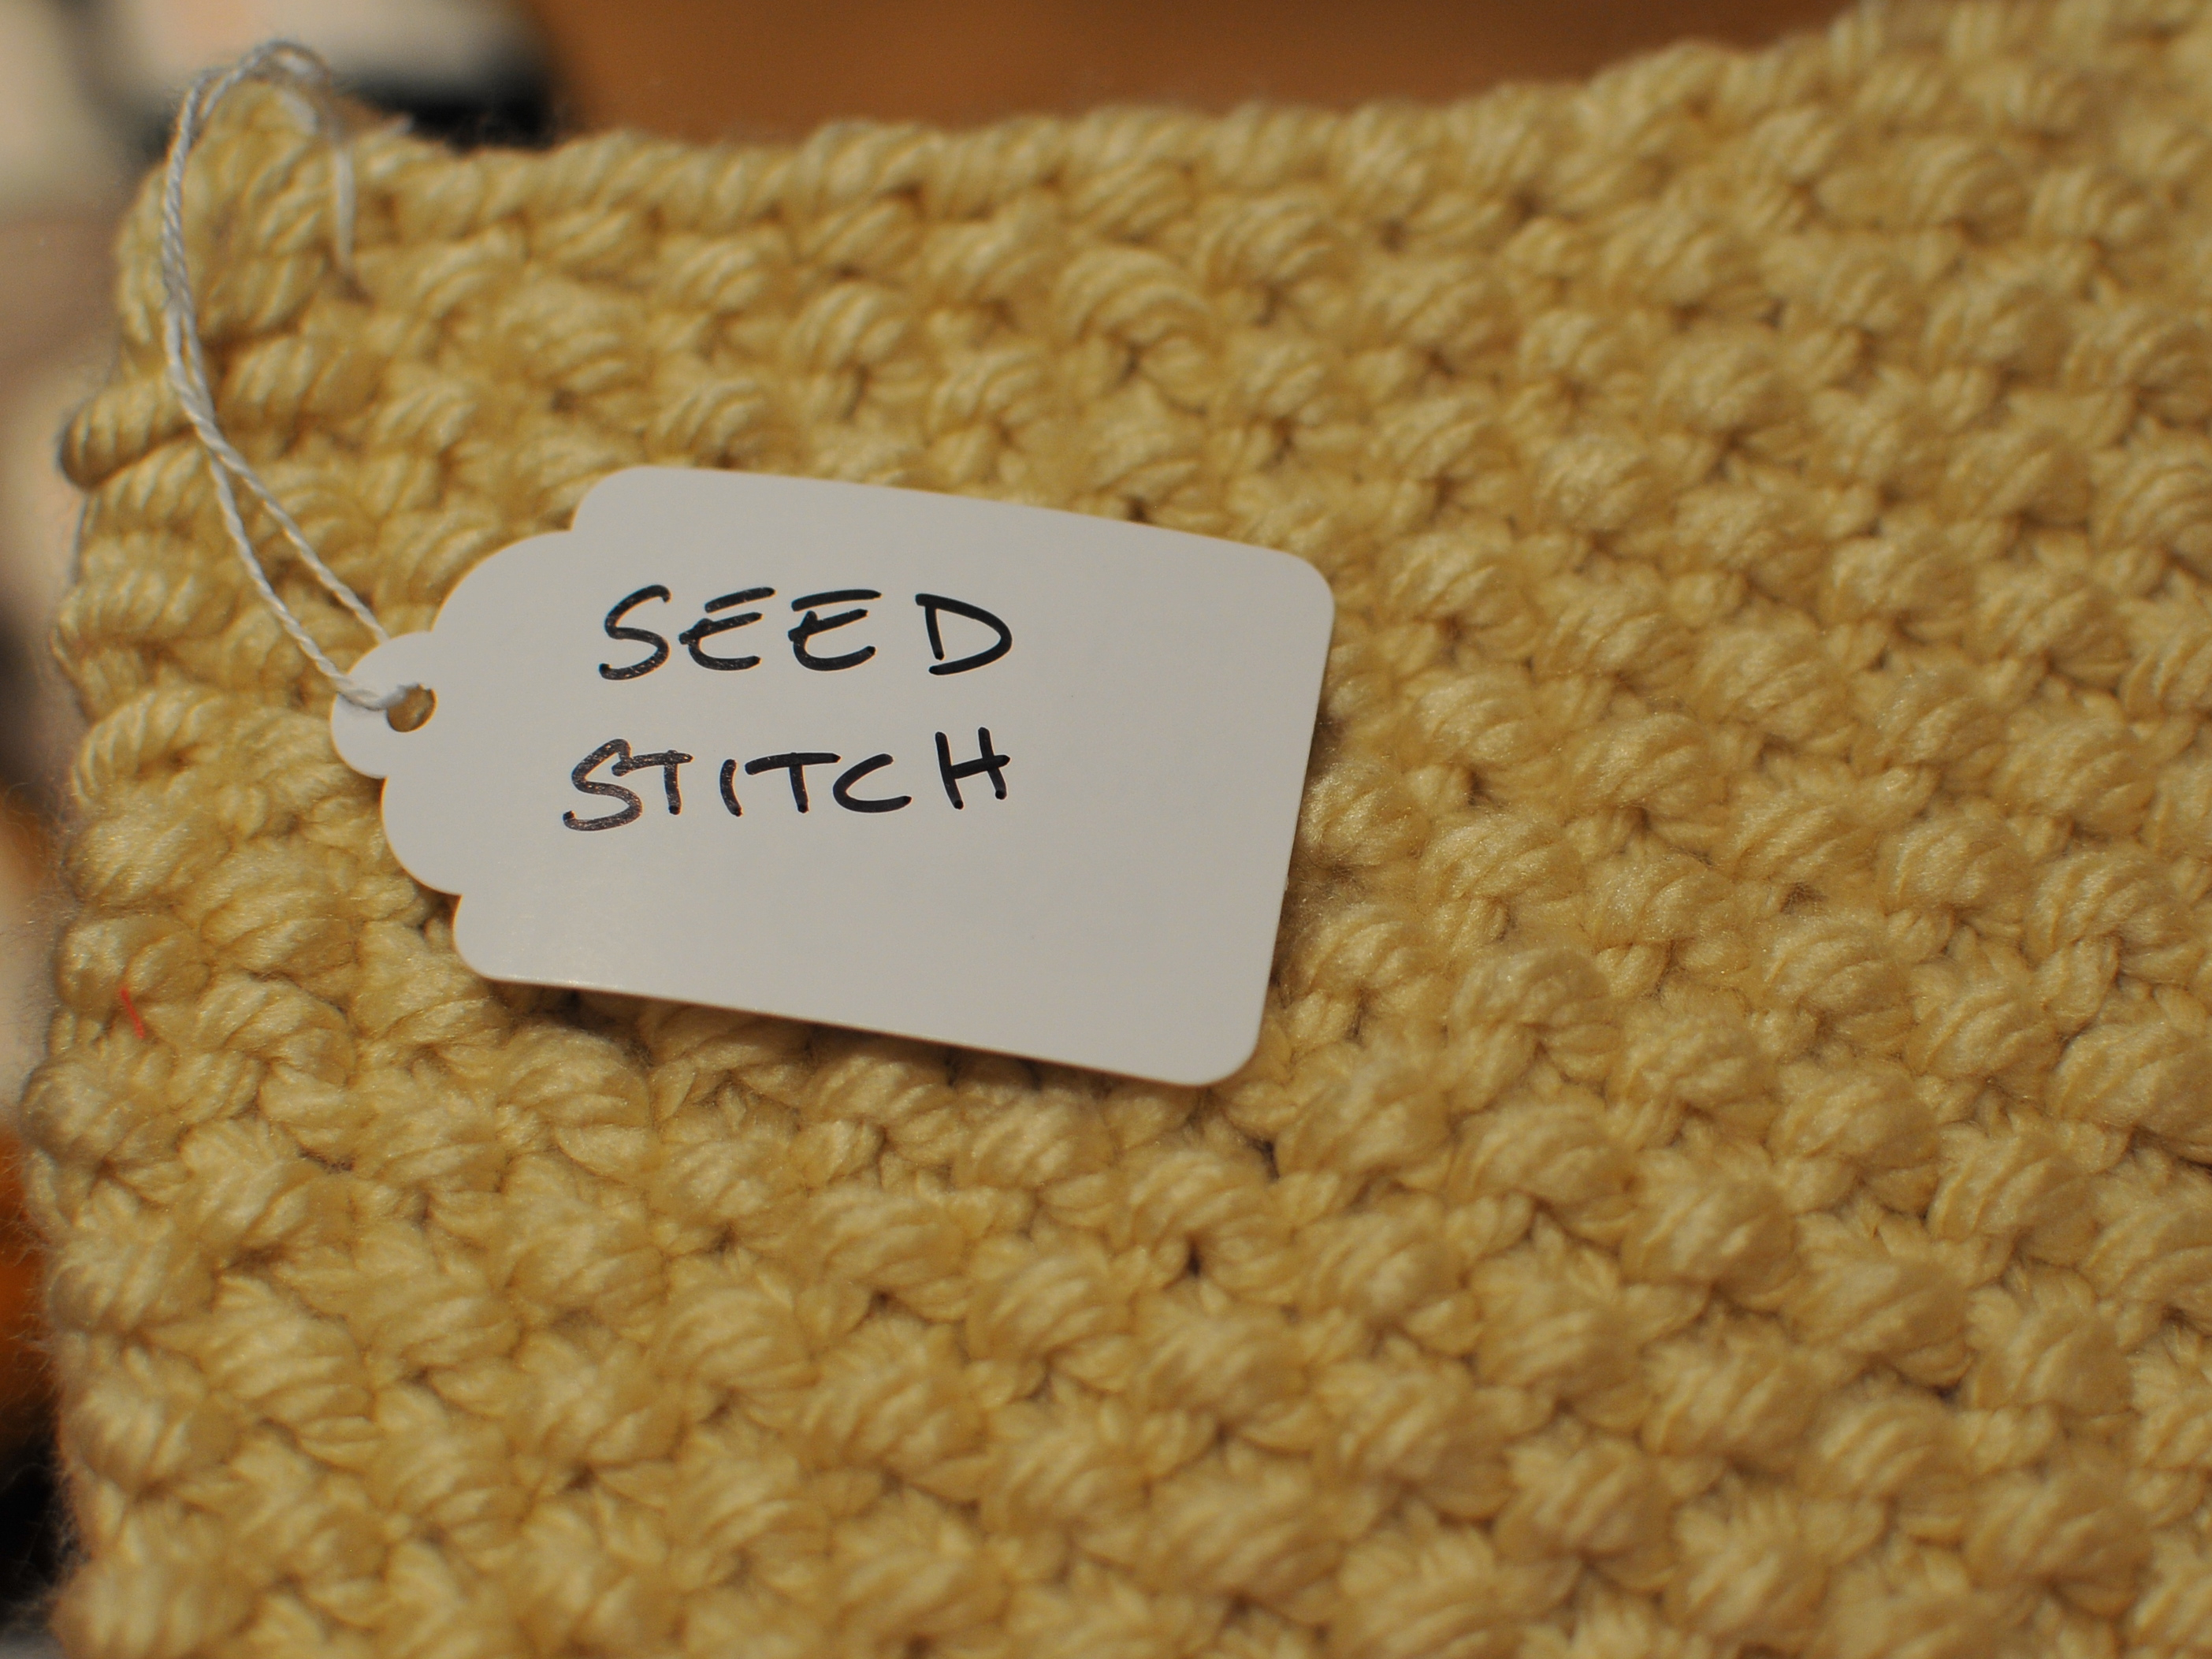 Moss Stitch Scarf Knitting Pattern Moss Stitch Vs Seed Stitch British Seed Vs American Moss